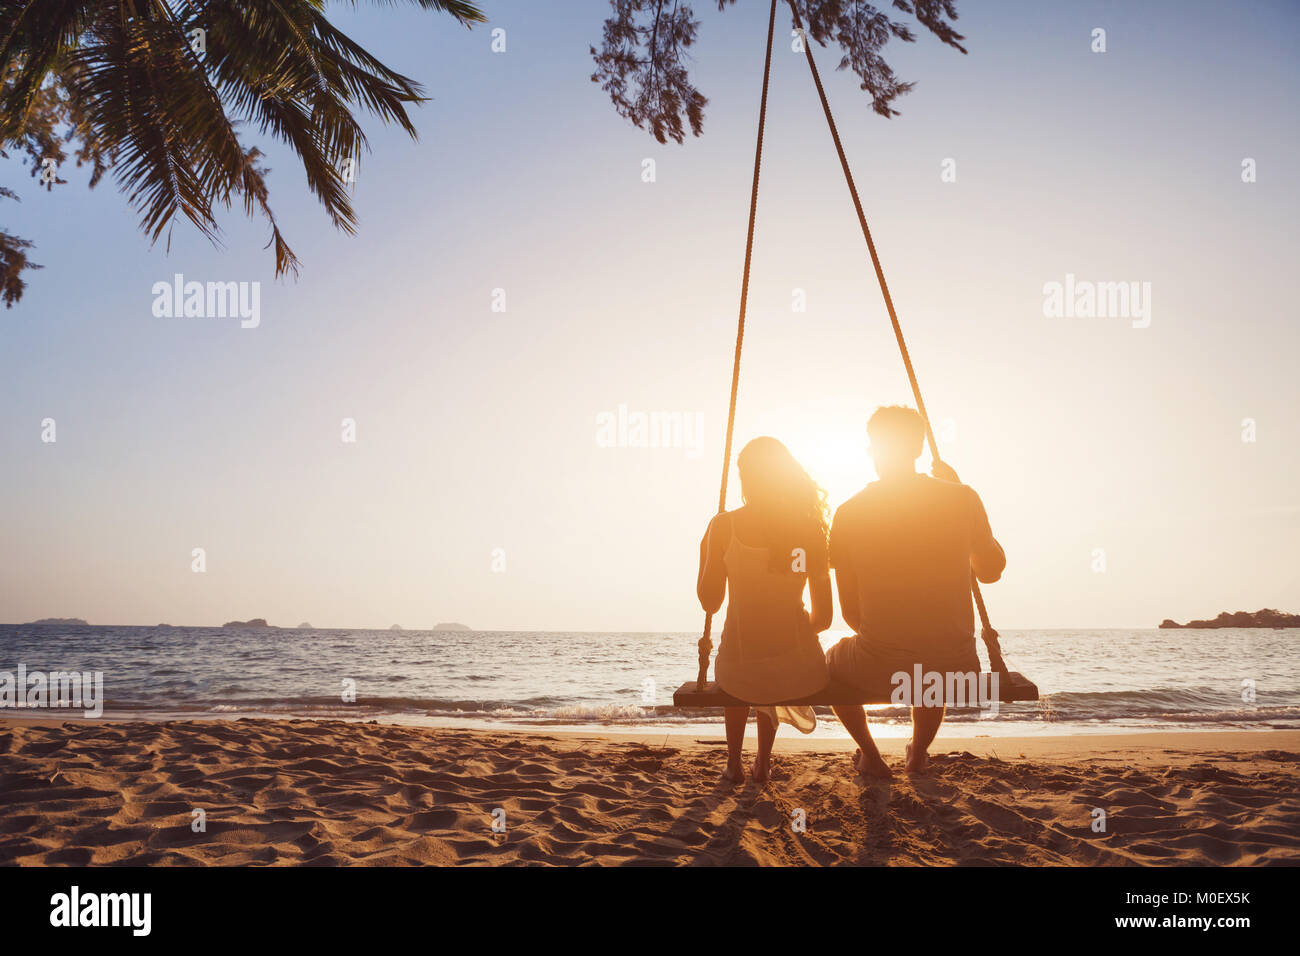 Romantisches Paar in Liebe sitzen zusammen am Seil schwingen am sunset beach, Silhouetten von jungen Mann und Frau auf Urlaub oder Flitterwochen Stockfoto